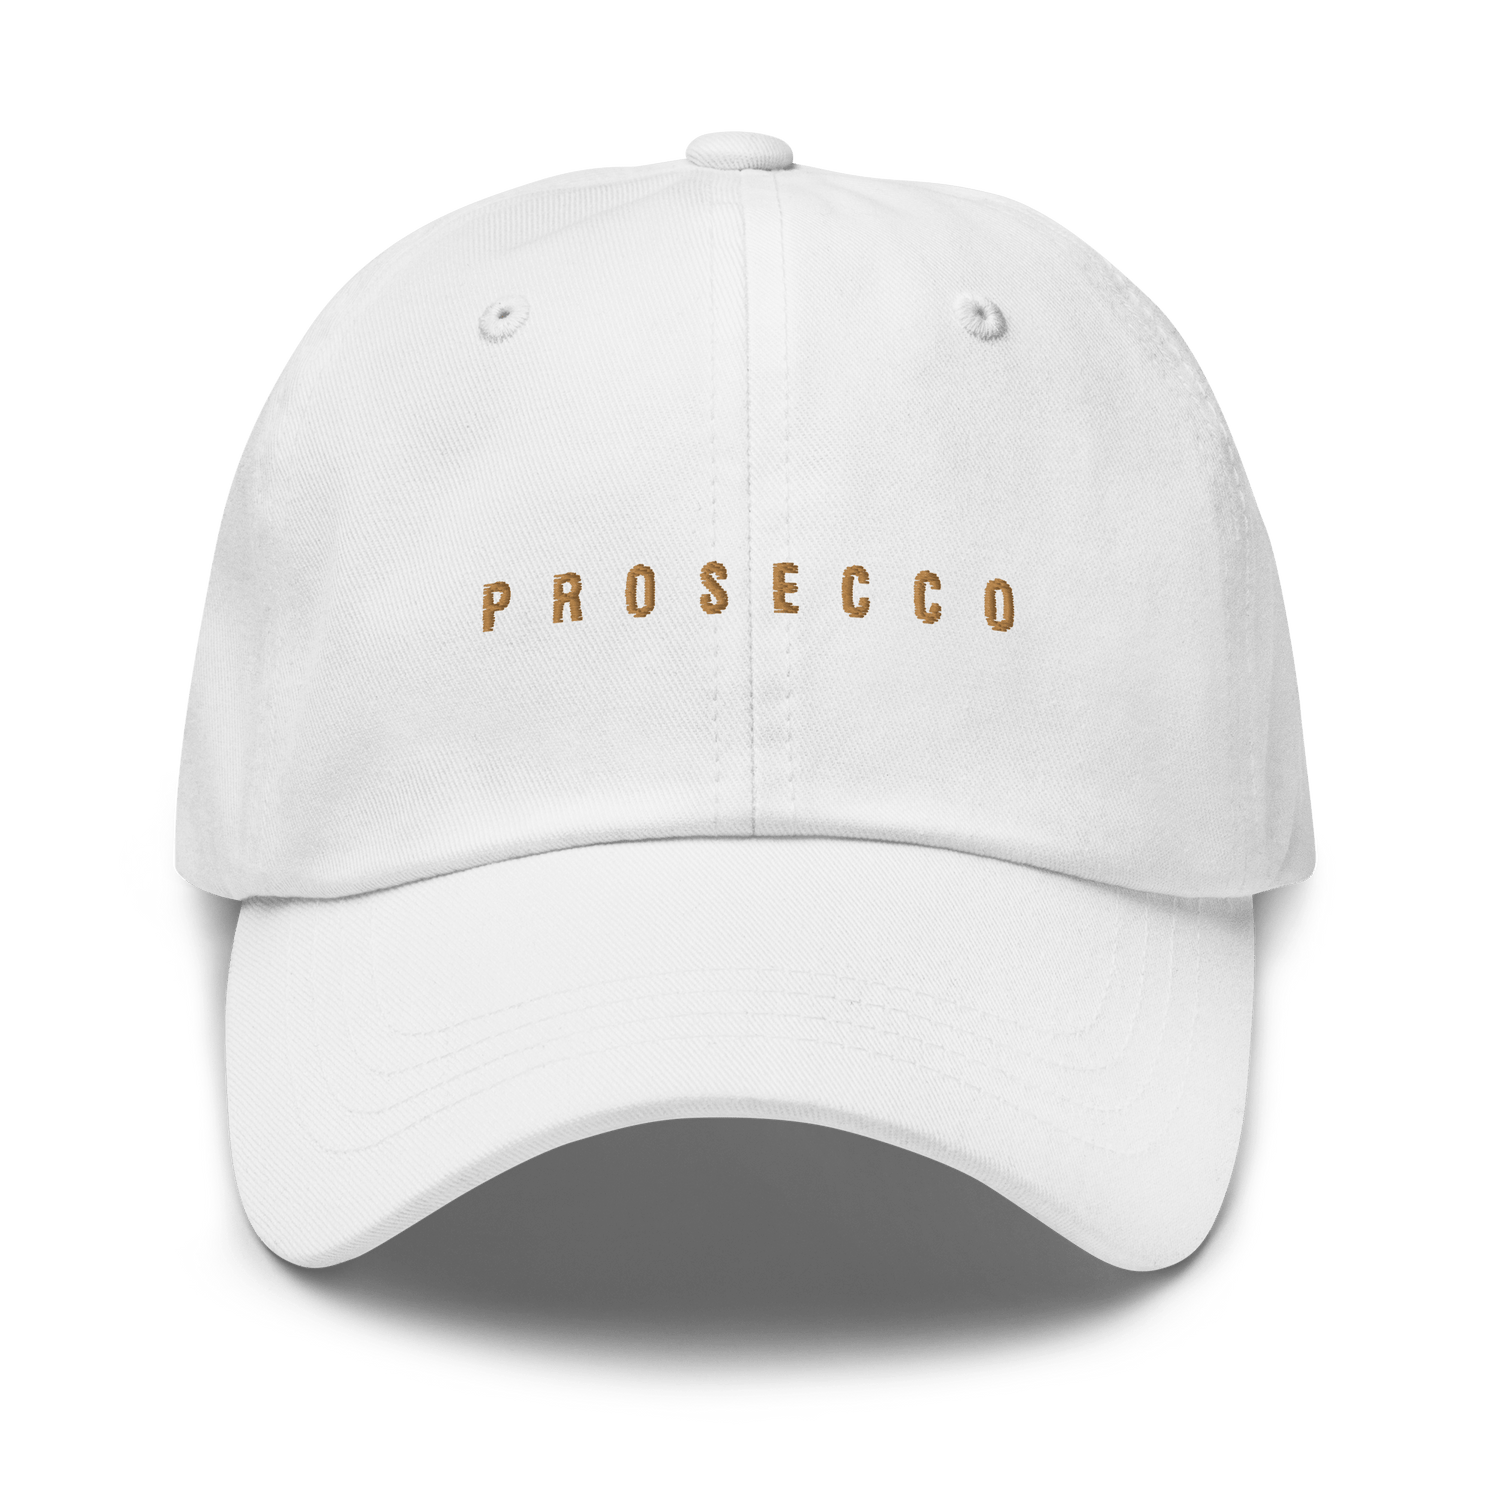 The Prosecco Cap